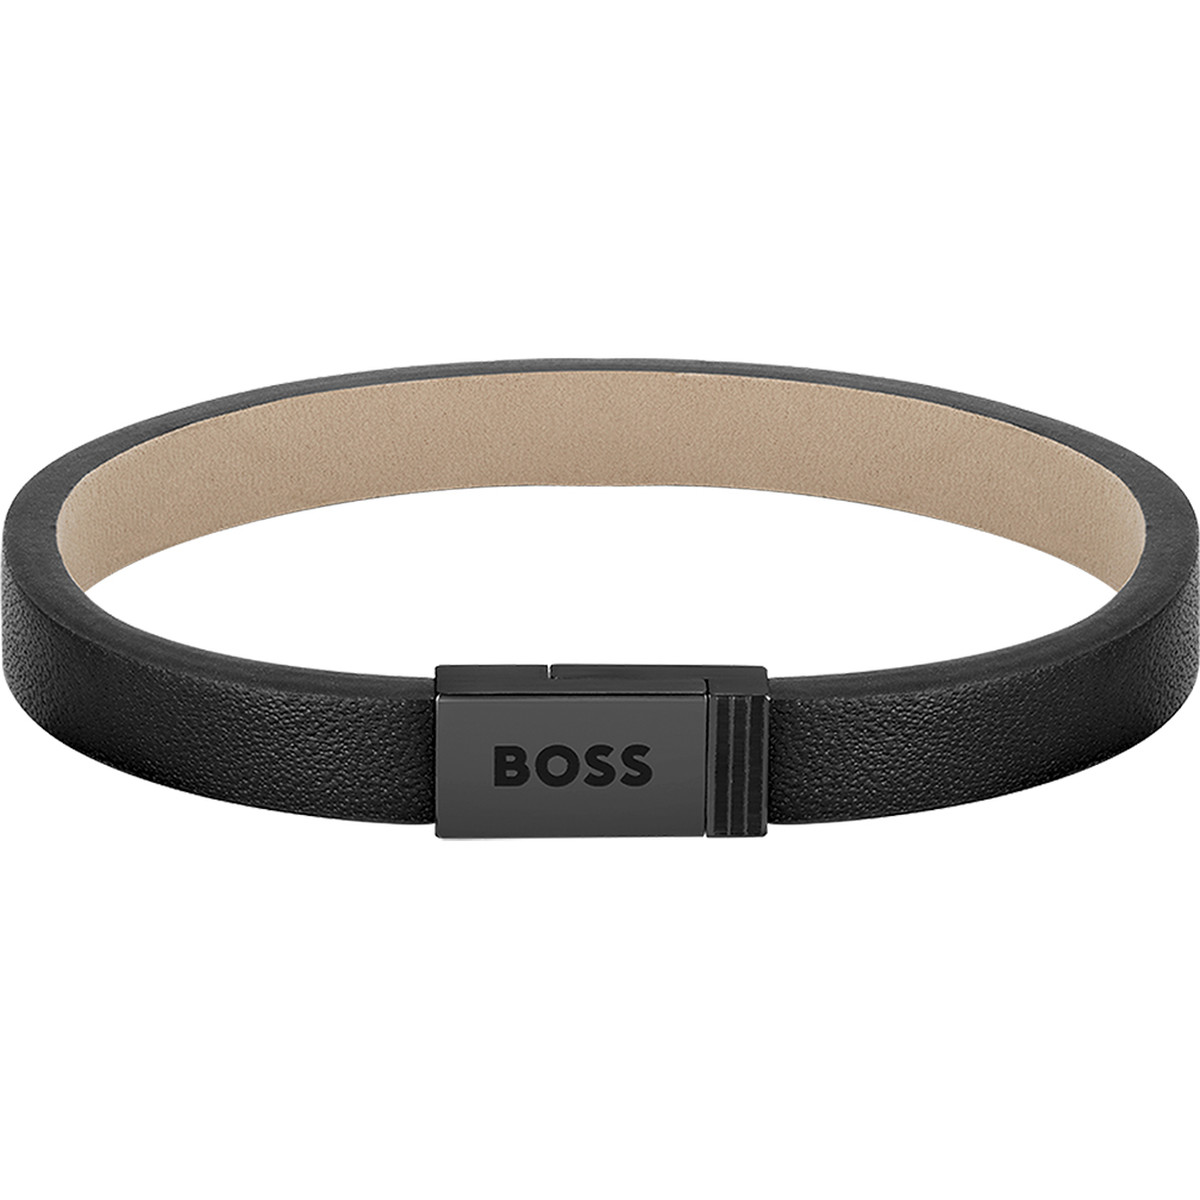 Bracelet homme Boss acier noir cuir noir 17,5 cm